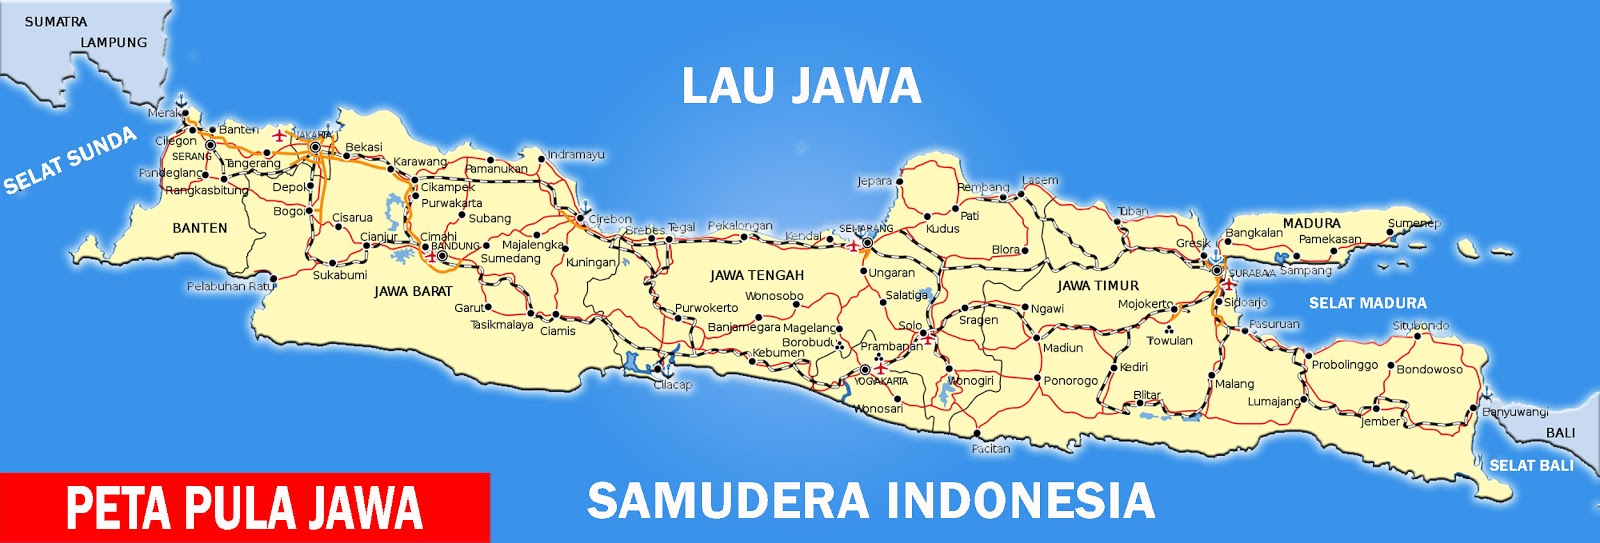 Peta Pulau Jawa